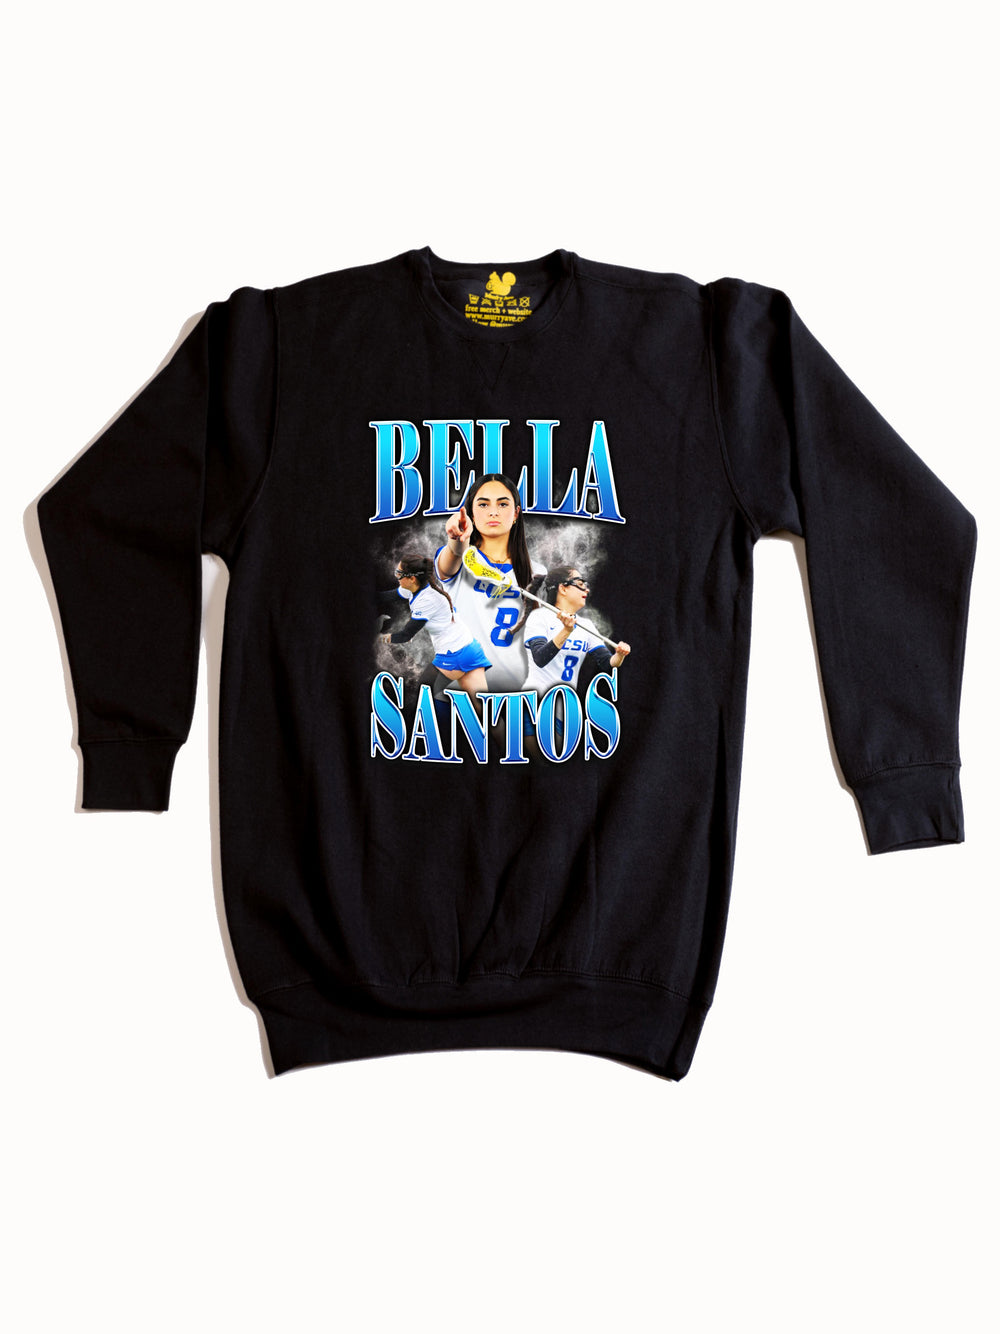 Bella Santos Crewneck Sweatshirt